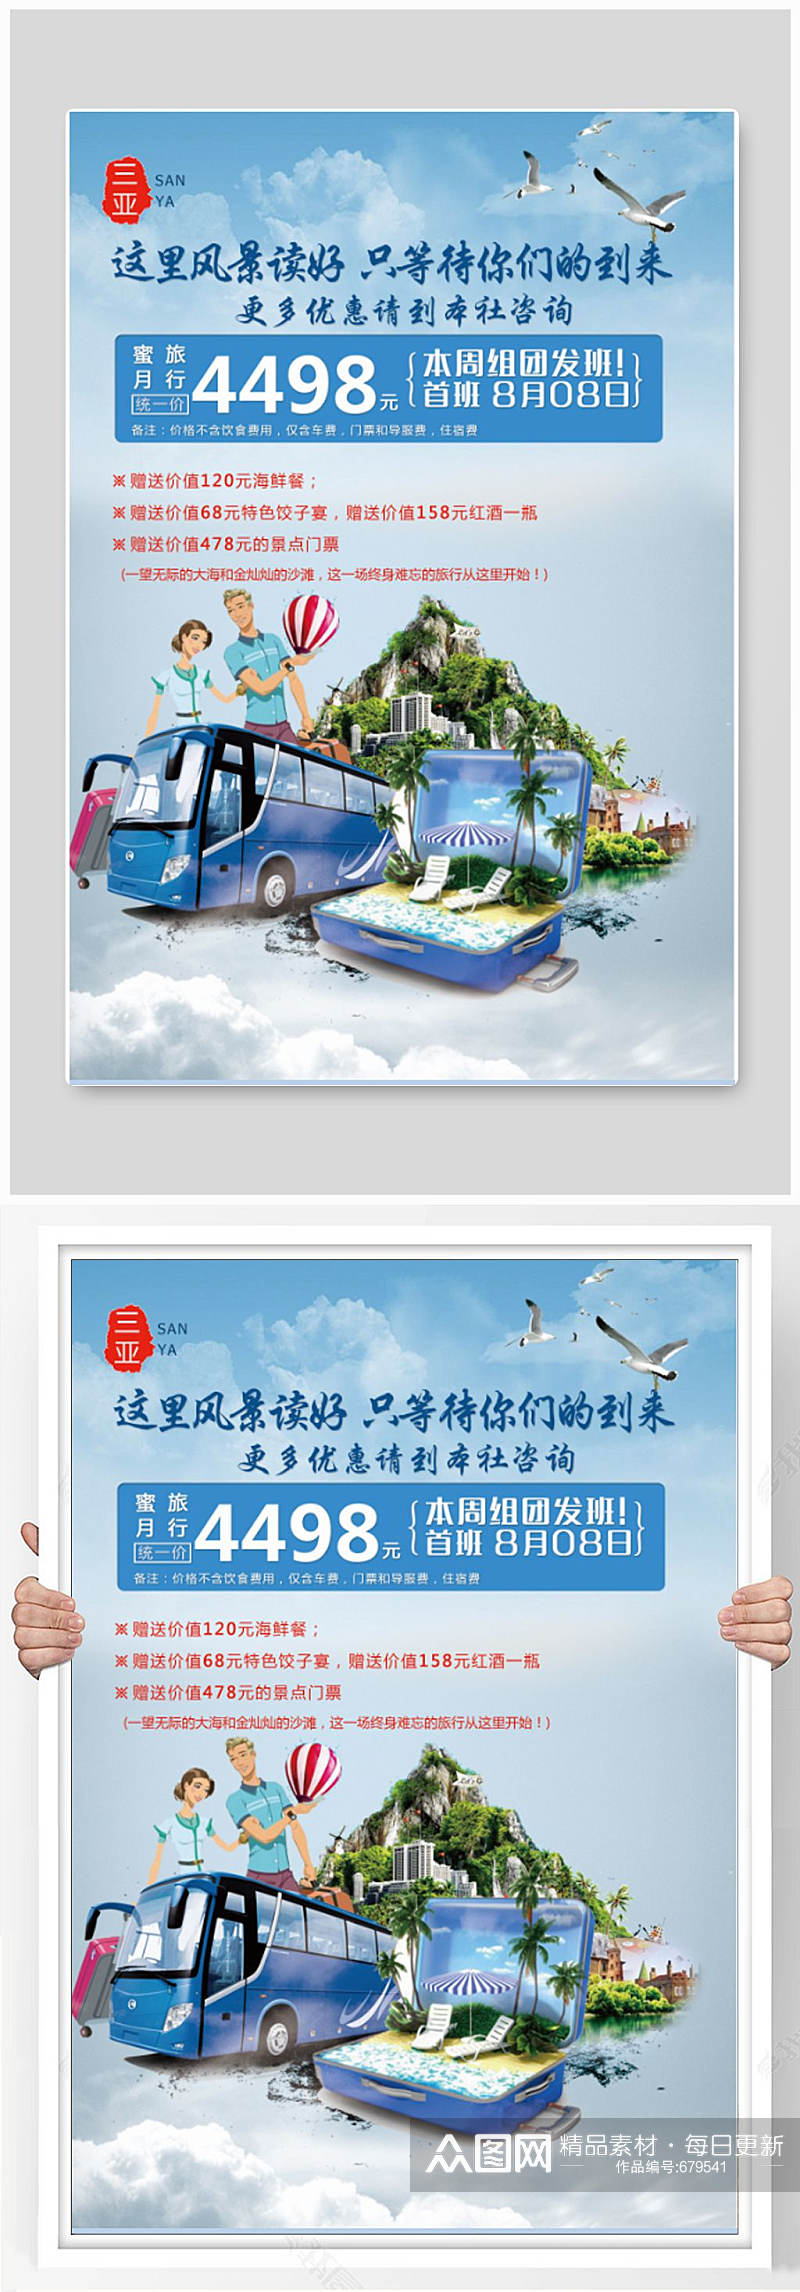 三亚旅游海报设计制作素材